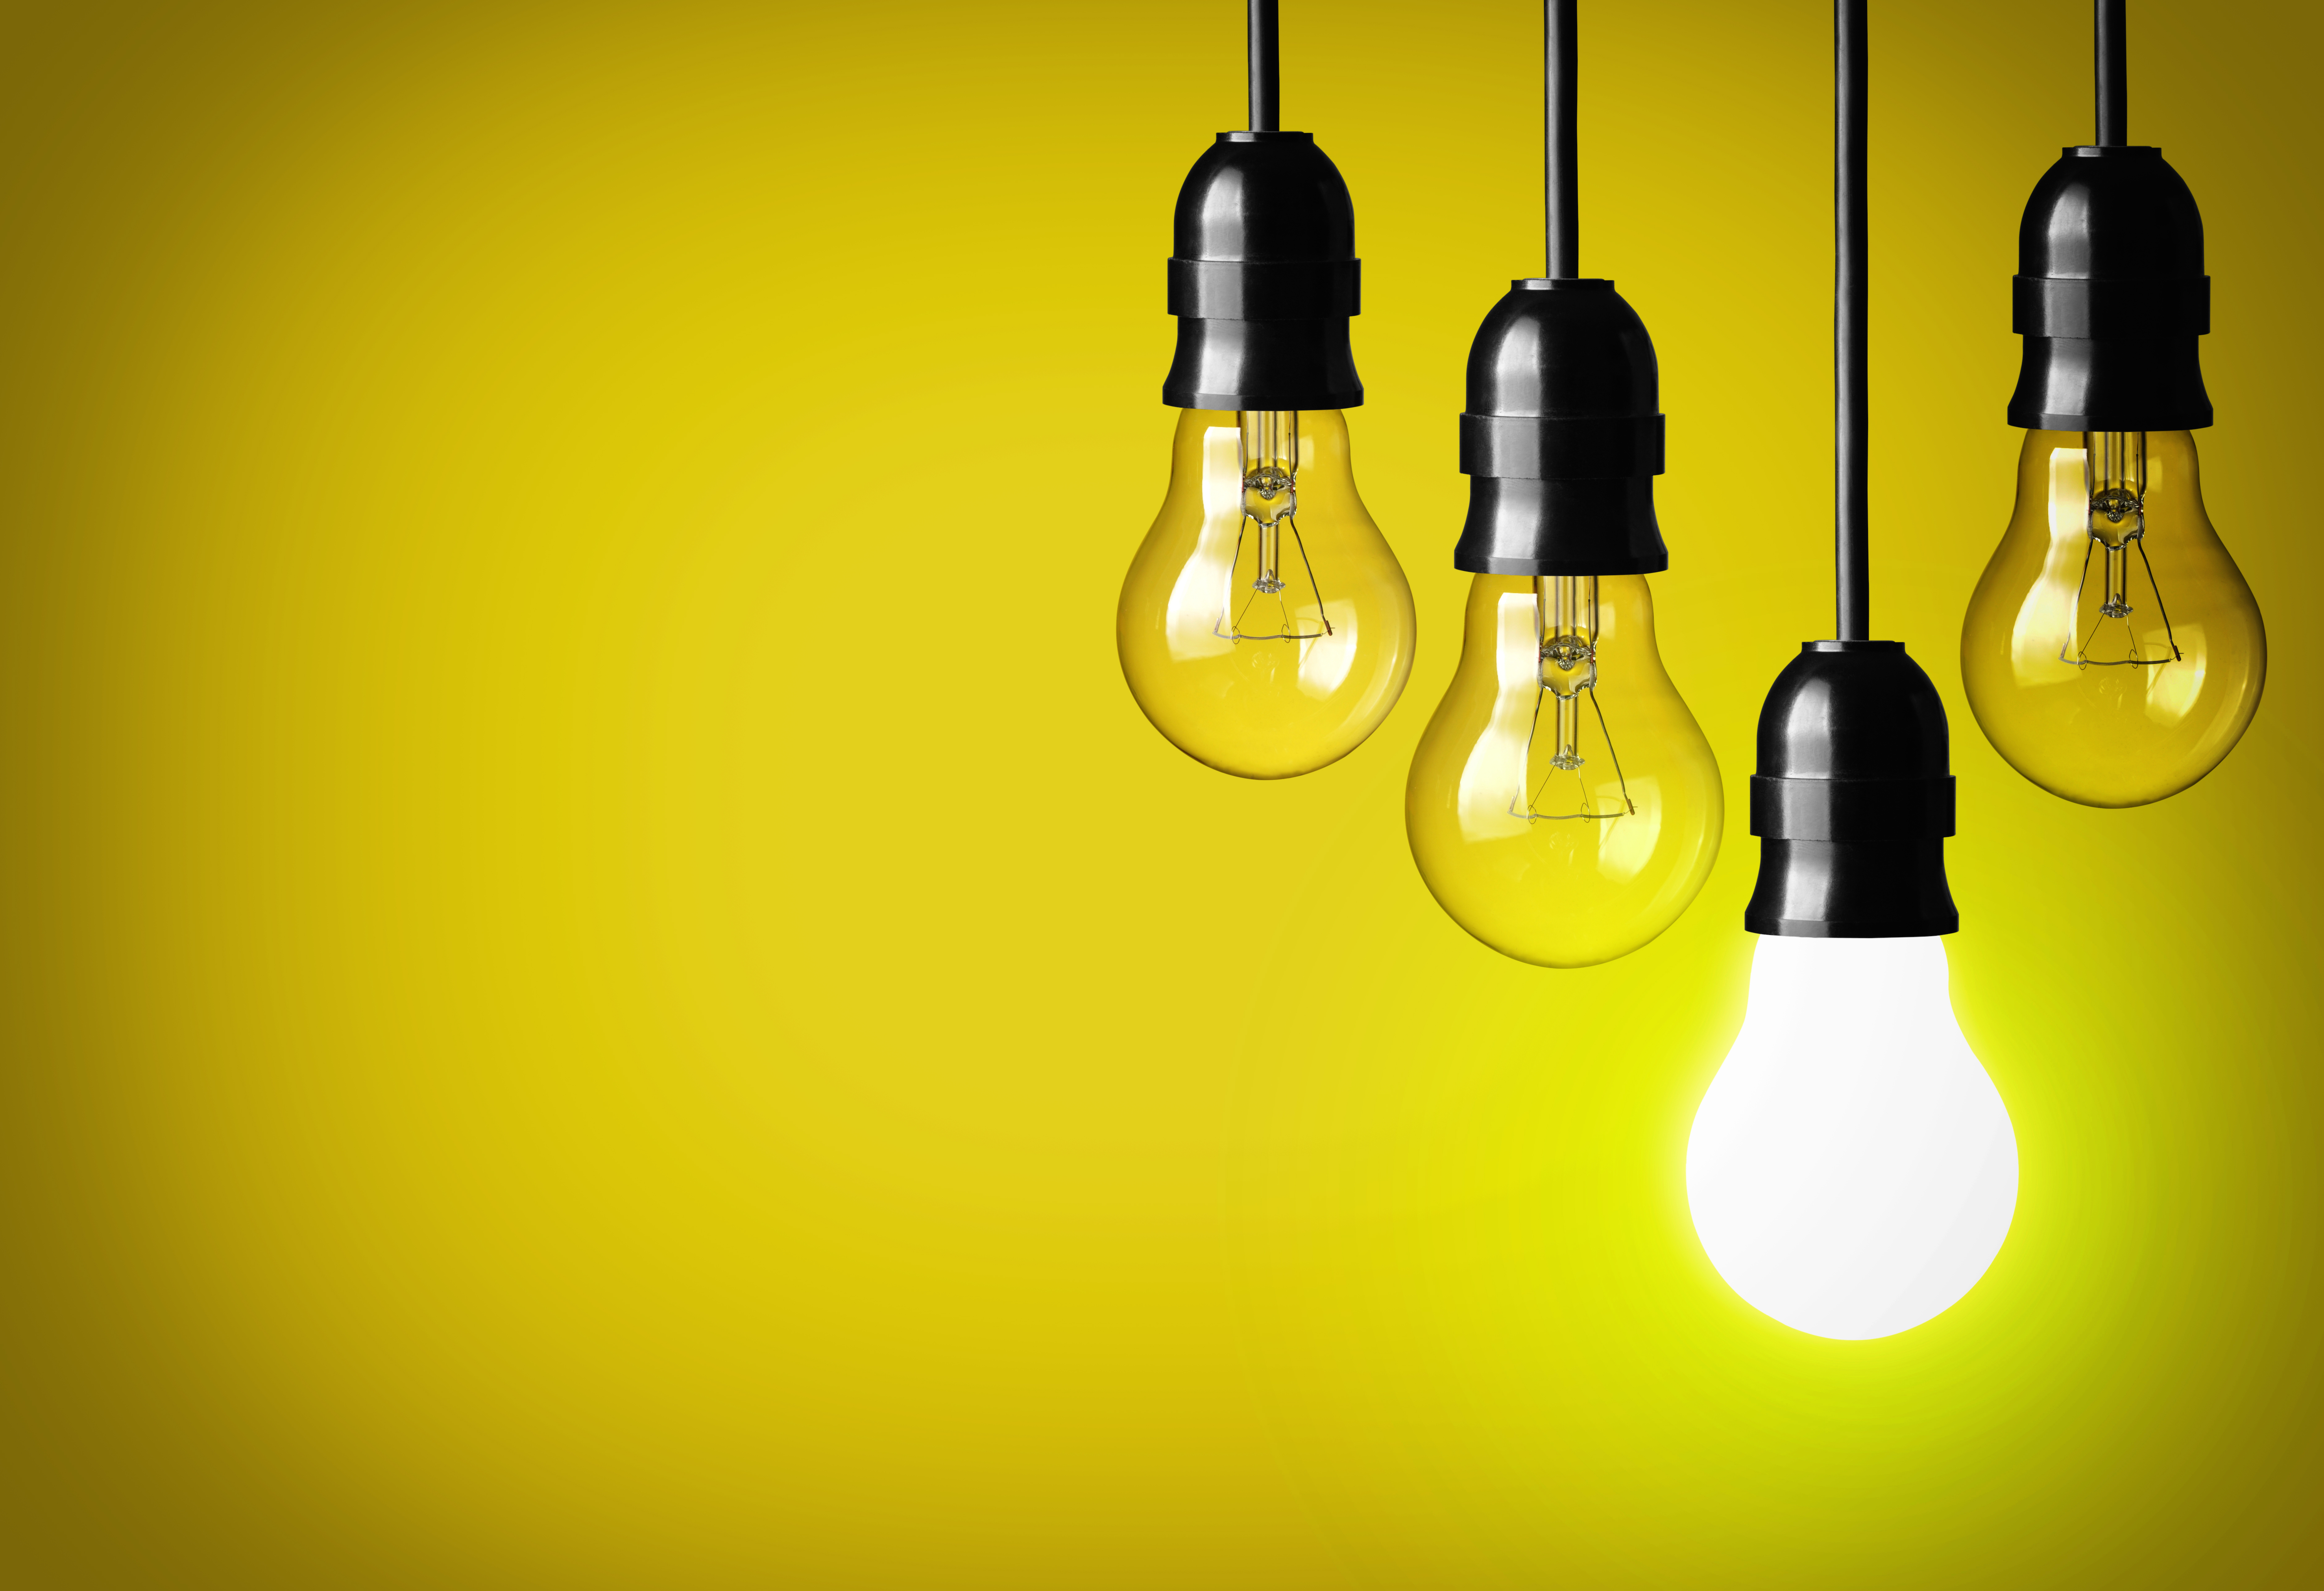 Lâmpadas representam boas ideias, premissa de empresas que querem inovar